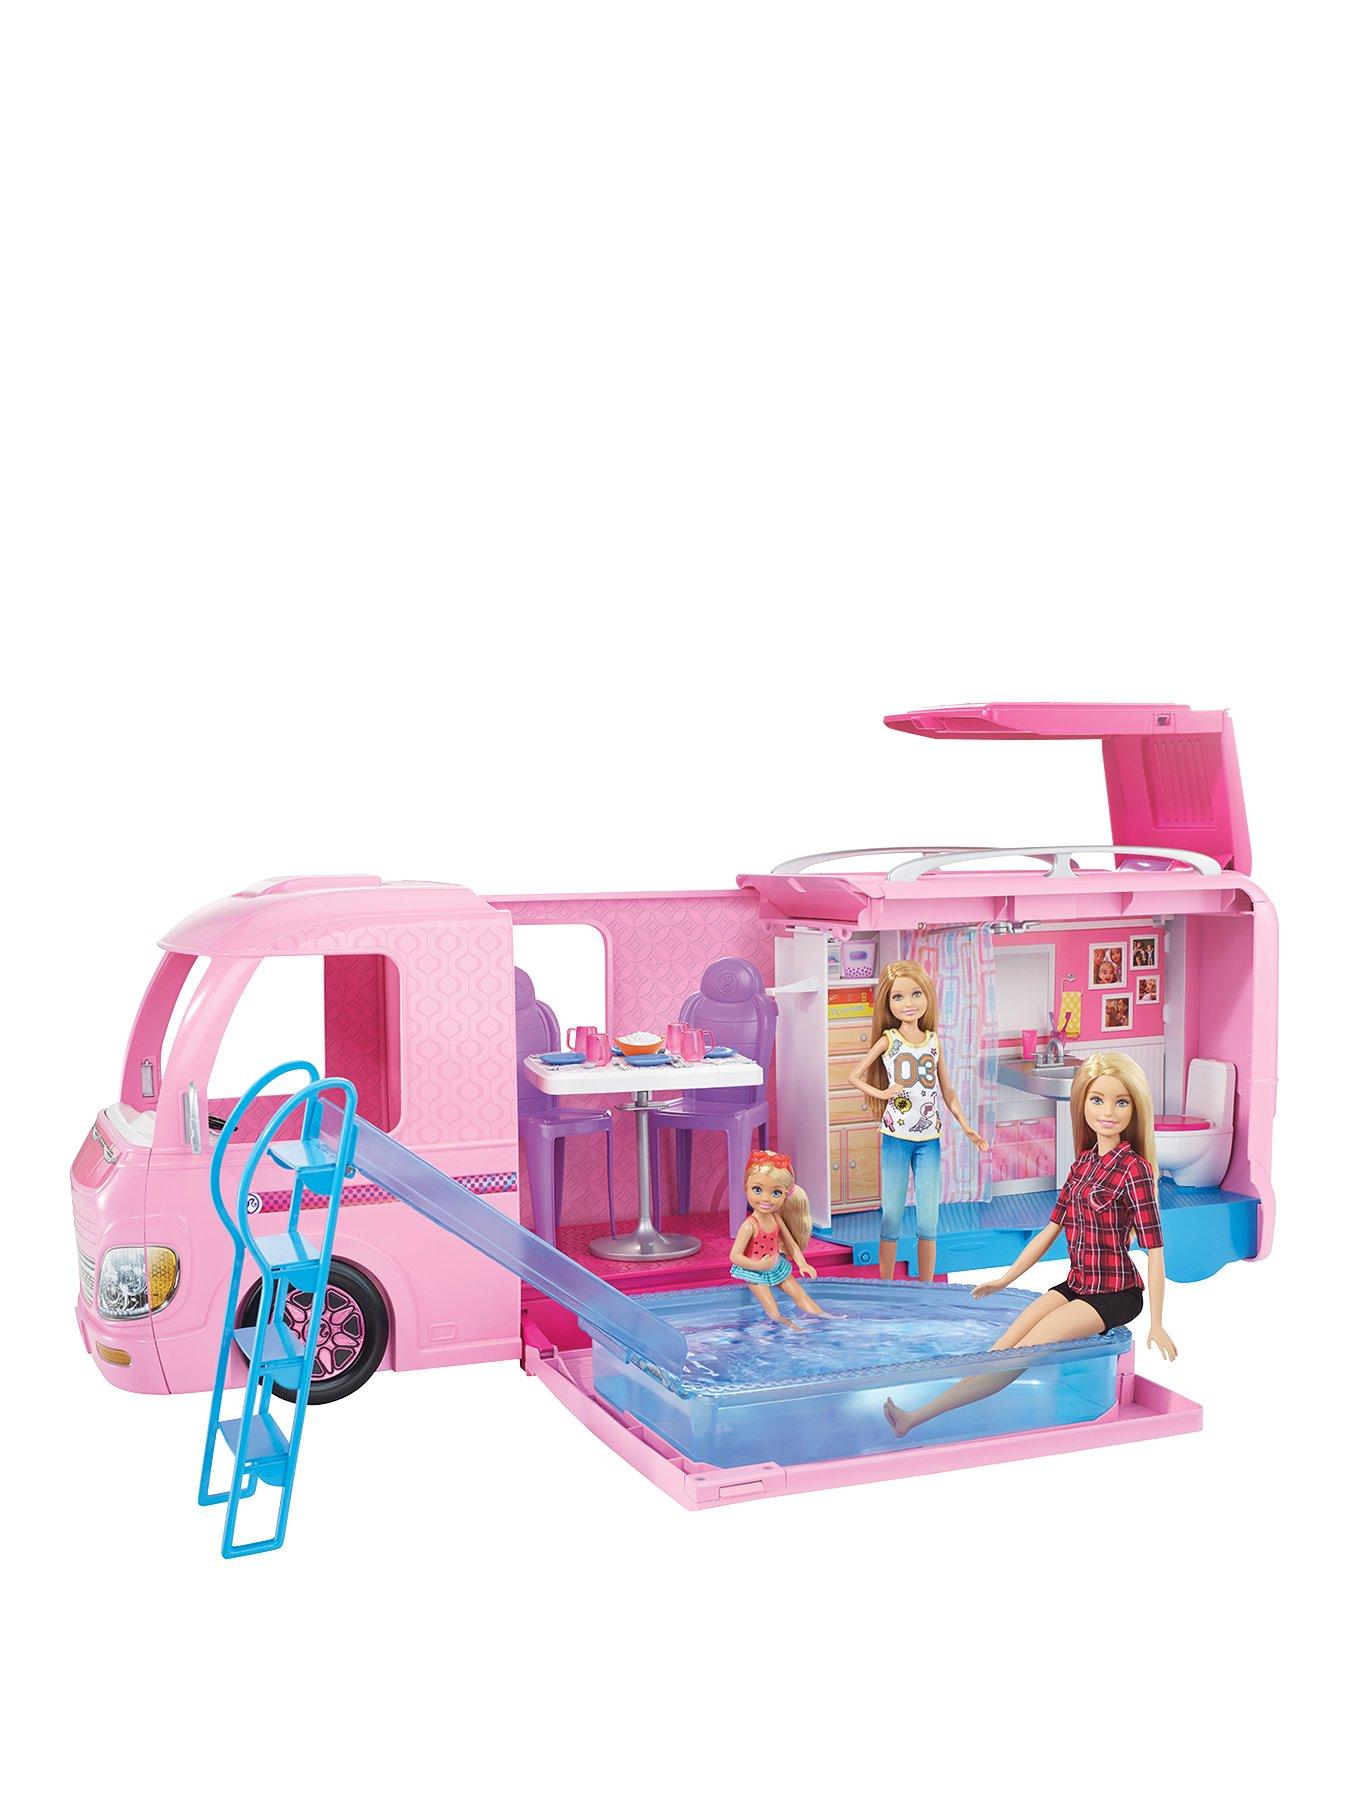 barbie dream camper set